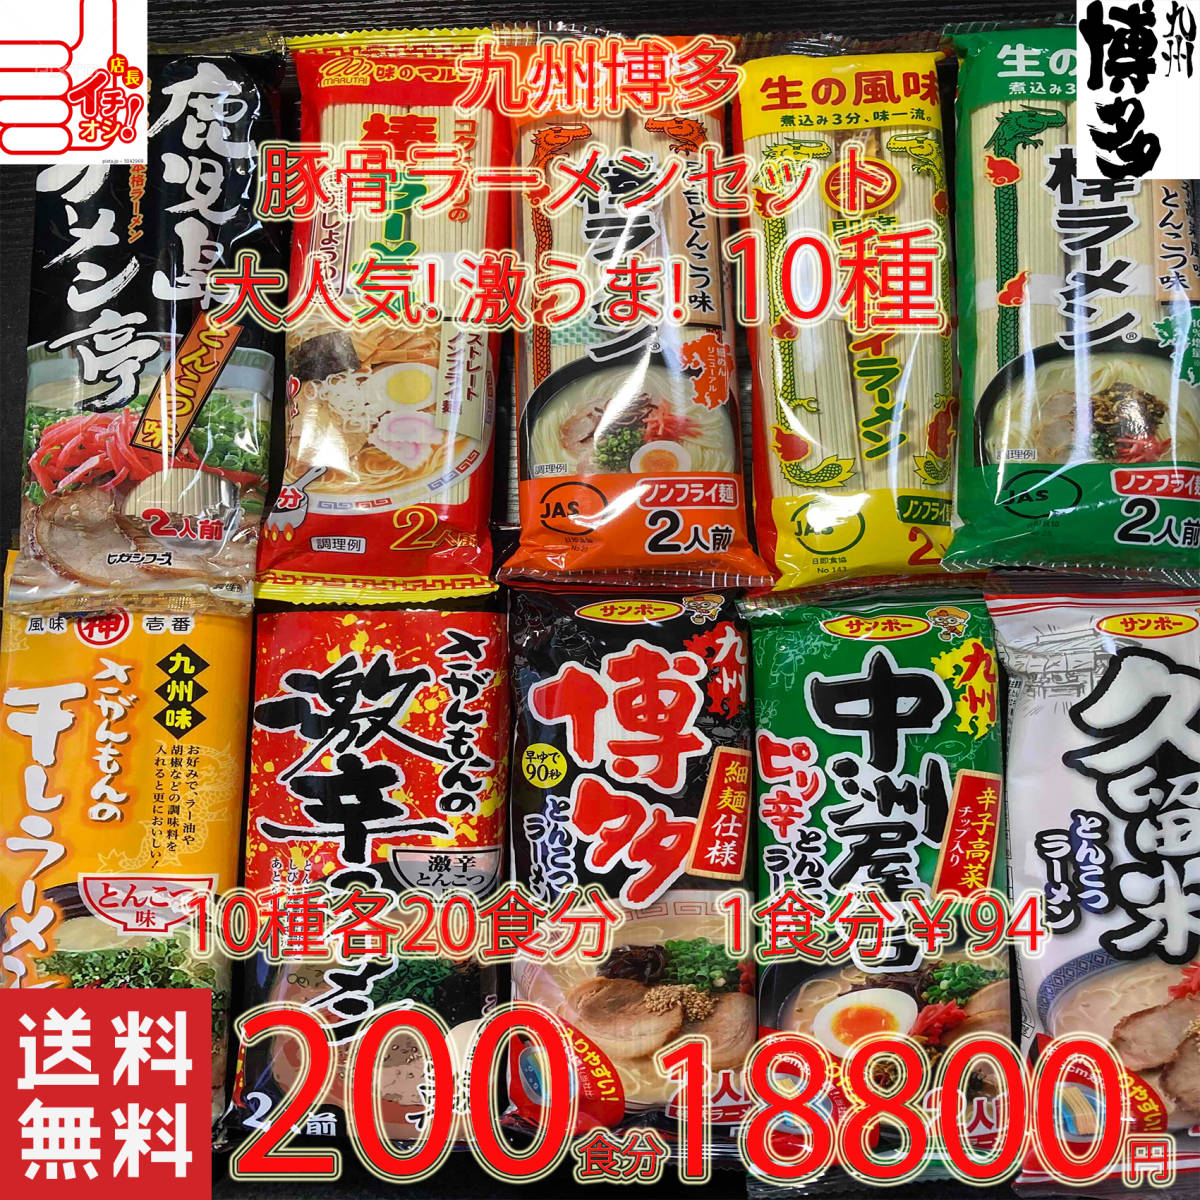  супер-скидка 200 еда минут 1 еда минут Y94 супер-скидка очень популярный Kyushu Hakata свинья . ramen комплект 10 вид рекомендация комплект бесплатная доставка по всей стране Kyushu Hakata 